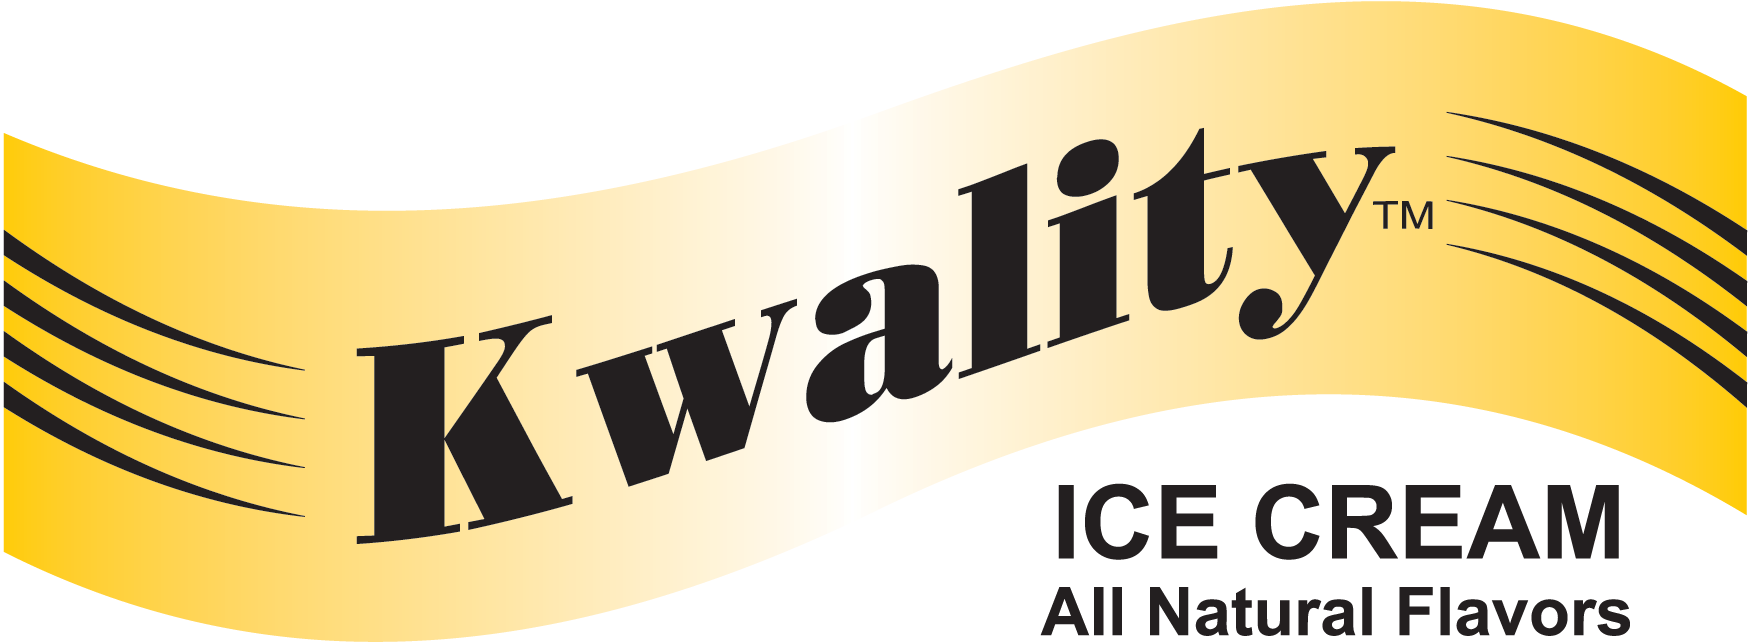 Yummy cassata from kwality walls - KWALITY WALL'S CASSATTA Customer Review  - mouthshut.com